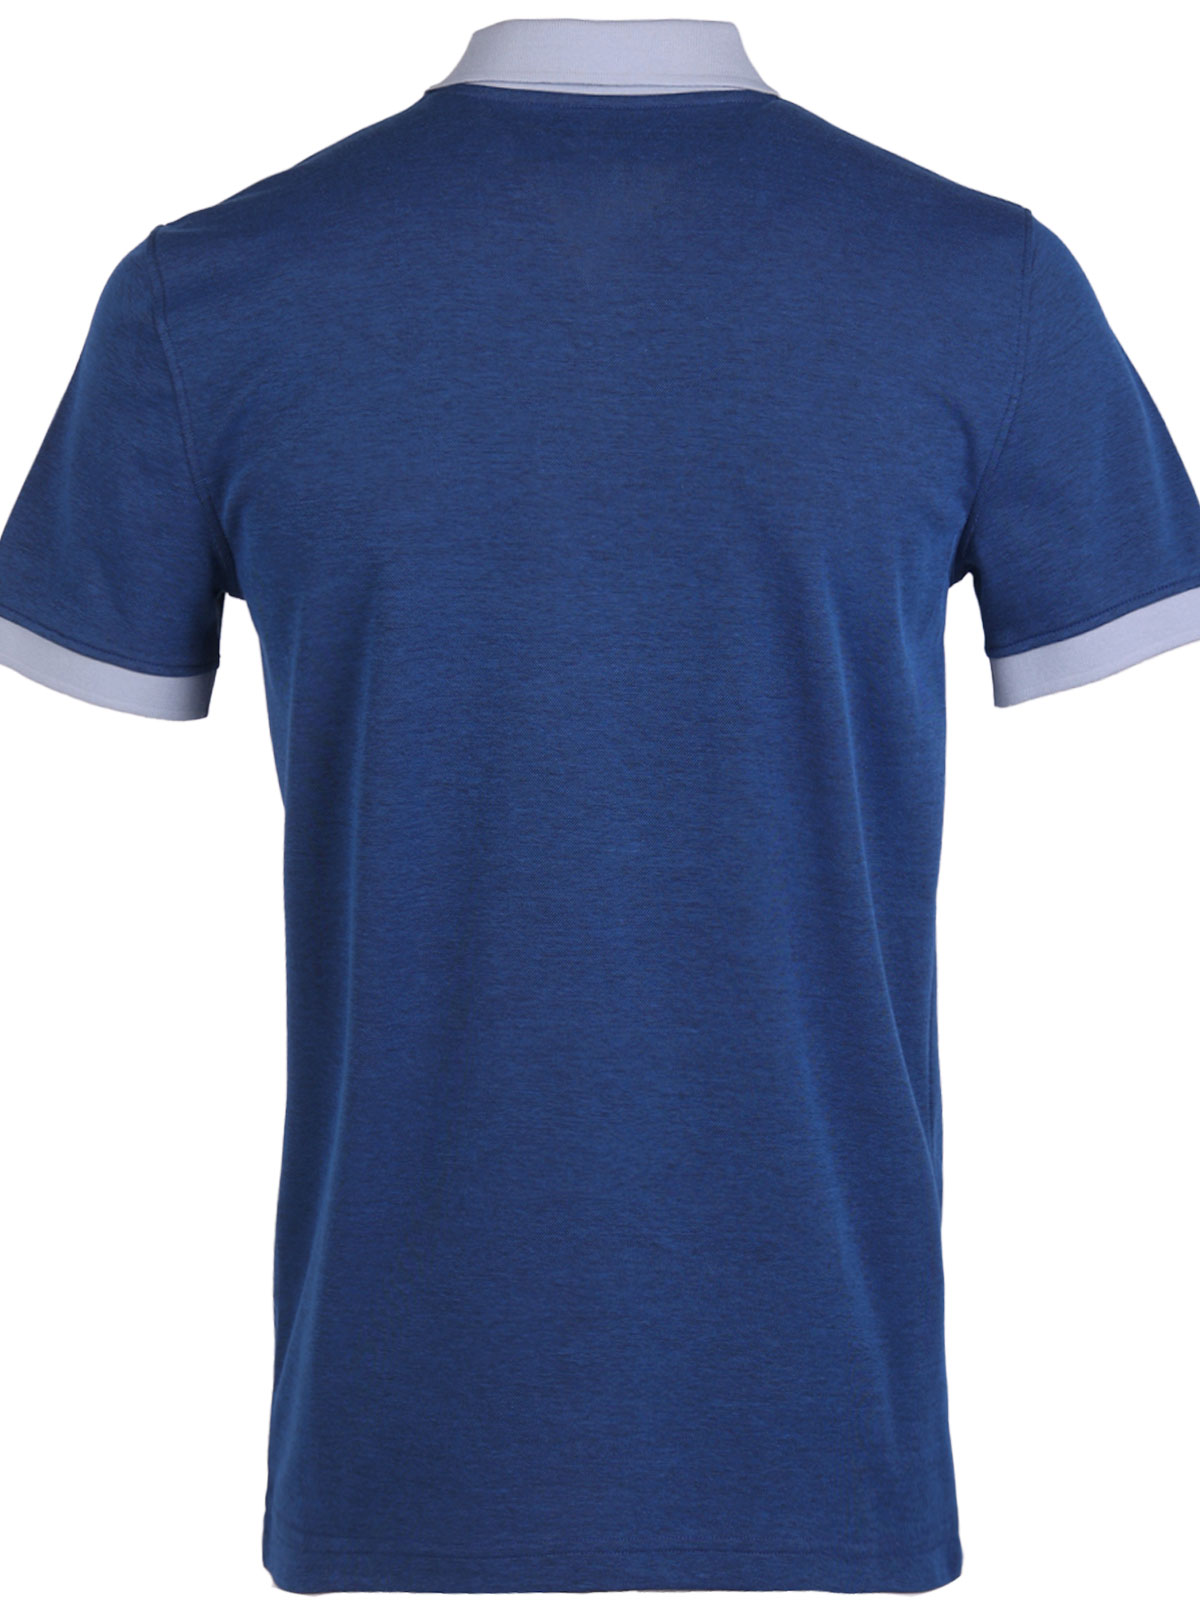 Ανδρικό tshirt σε μπλε μελανζέ - 93452 € 38.81 img2